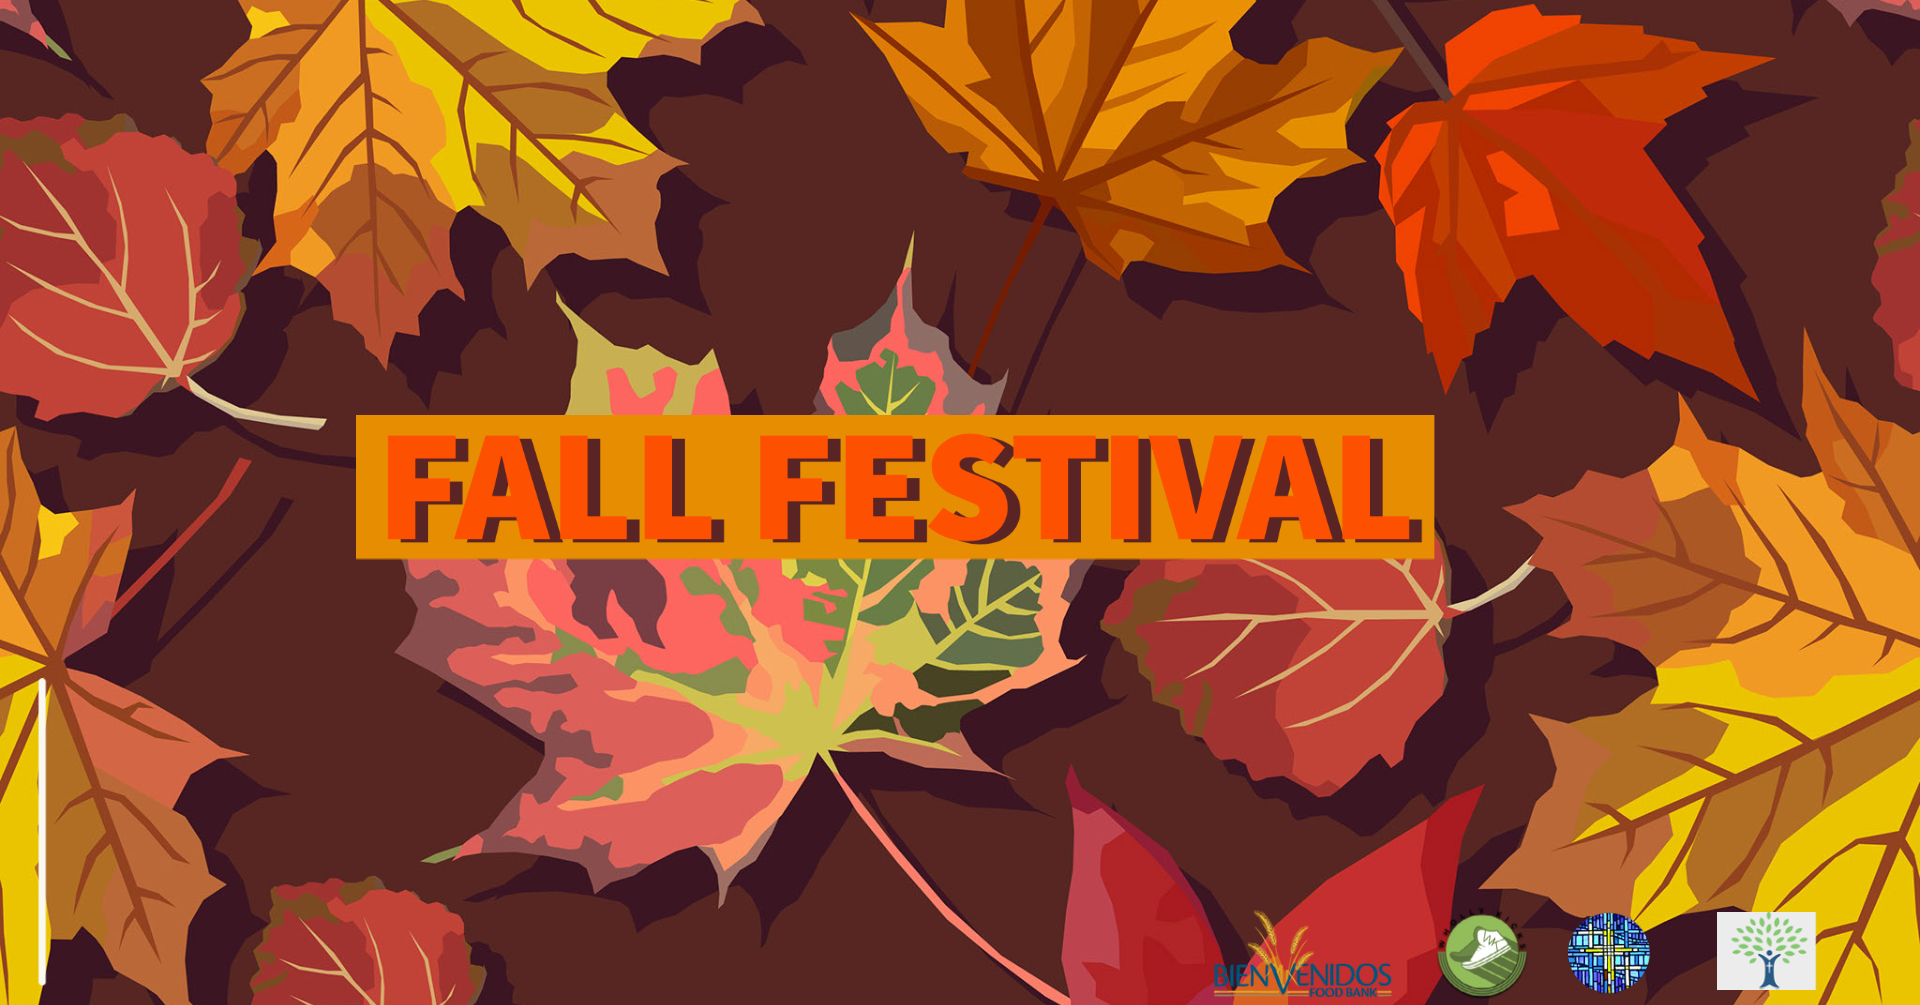 Fall Festival, Wheat Ridge, Colorado, United States